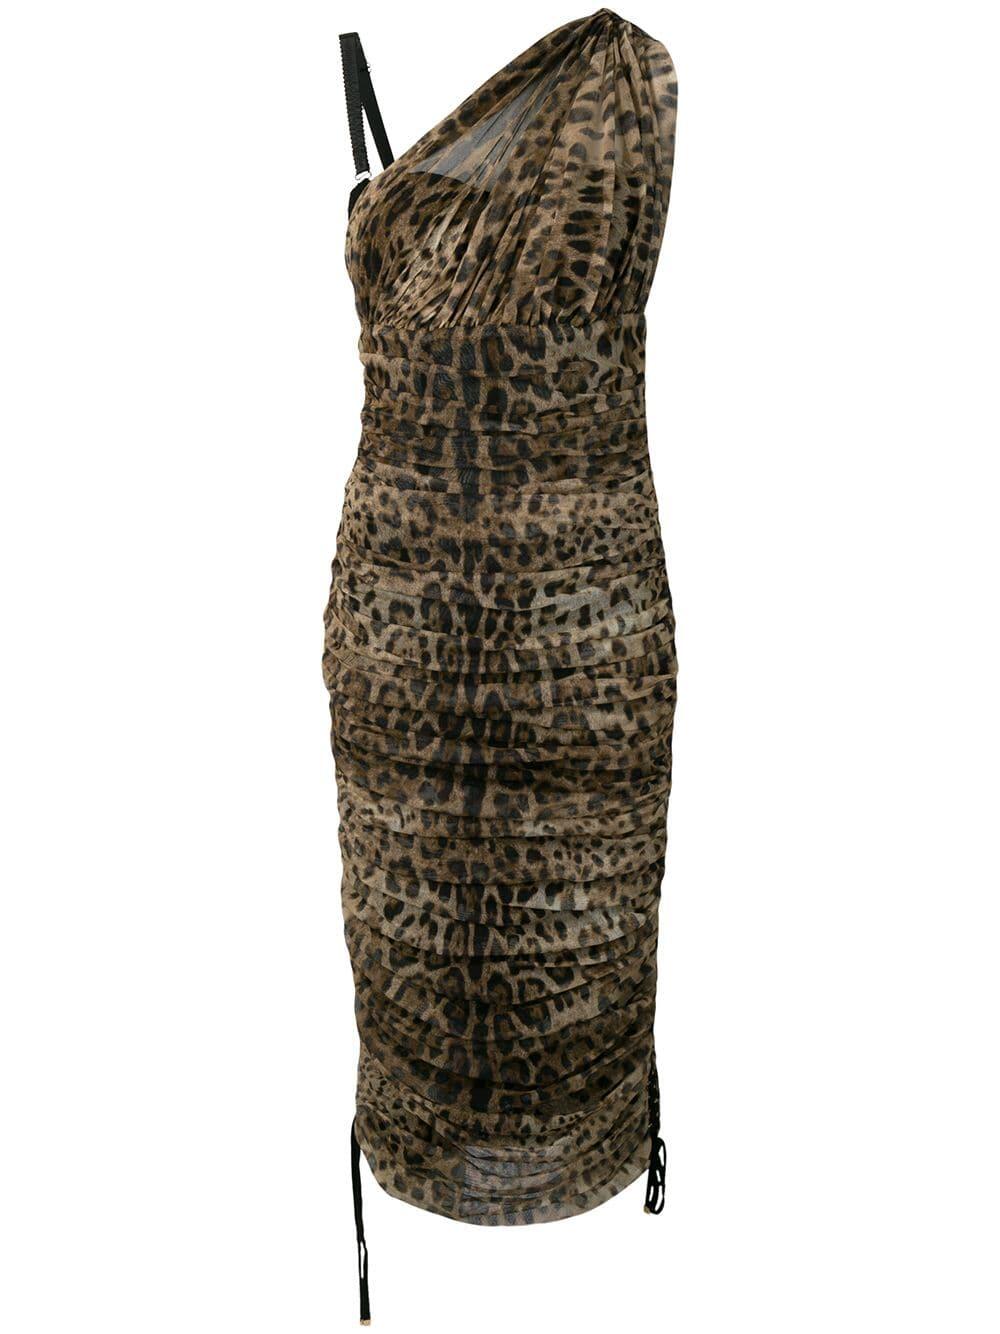 Dolce & Gabbana - Leopard Print One-Shoulder Bustier Ruched Dress